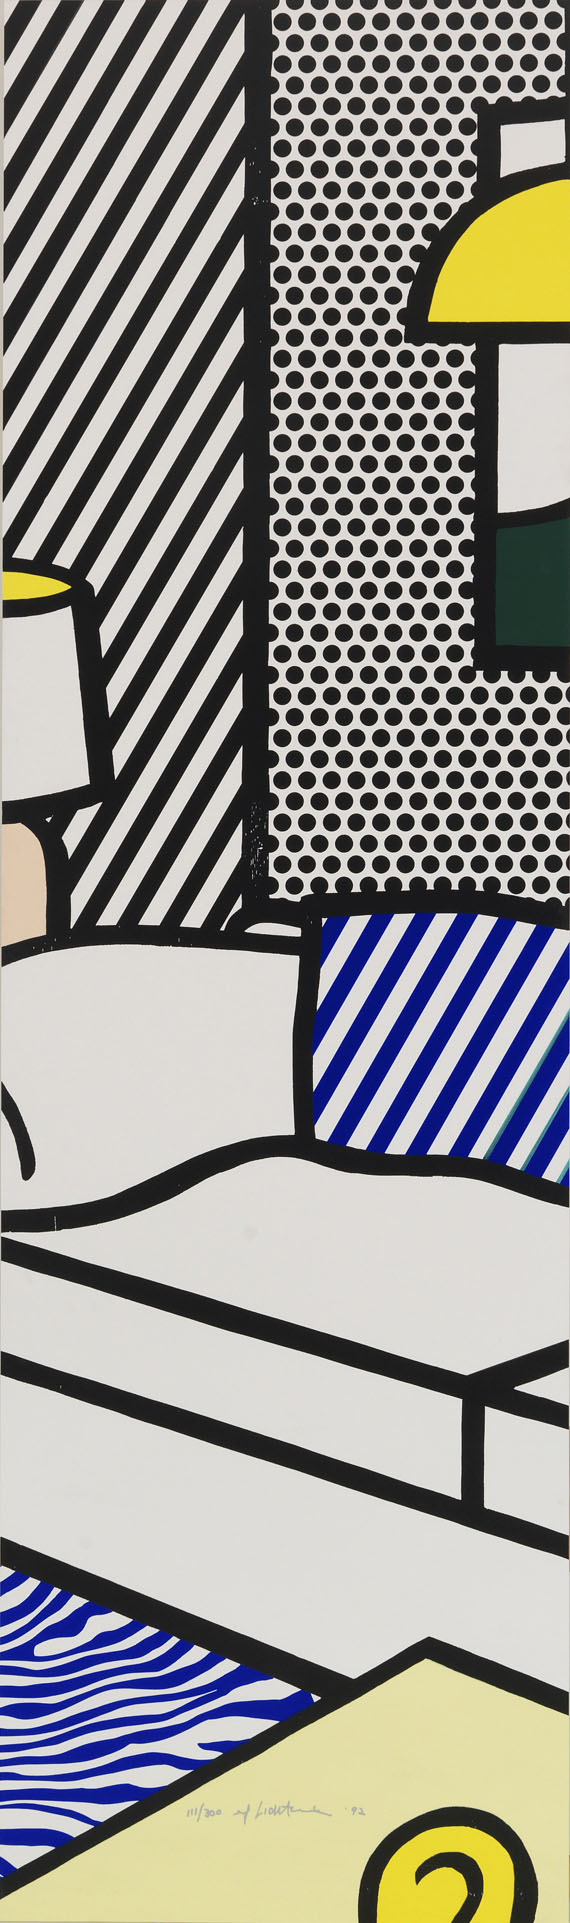 Roy Lichtenstein - Wallpaper with Blue Floor Interior - 